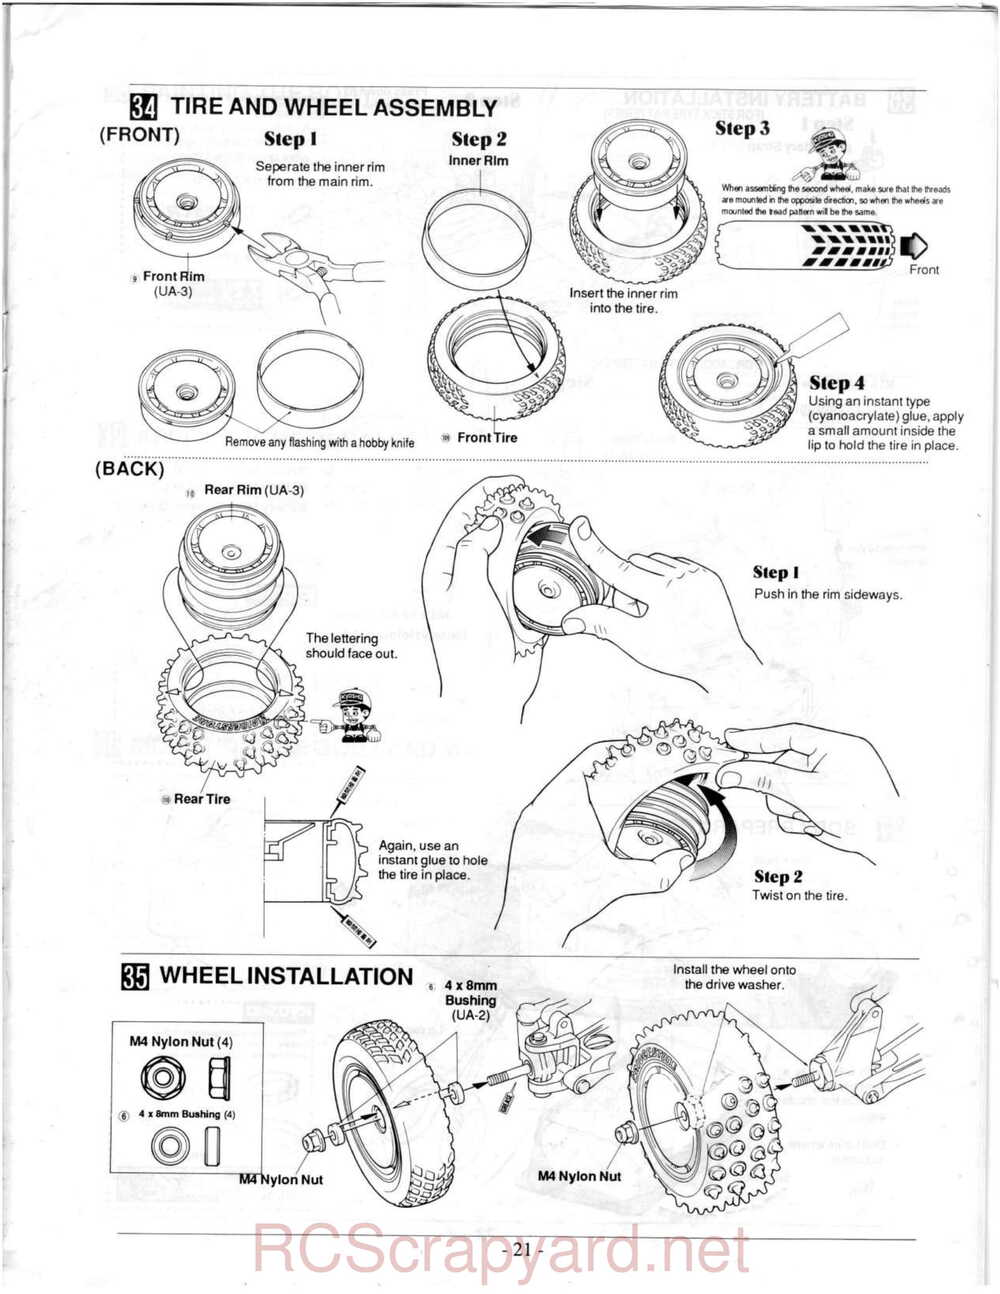 Kyosho - 3118 - Ultima-II - Manual - Page 21